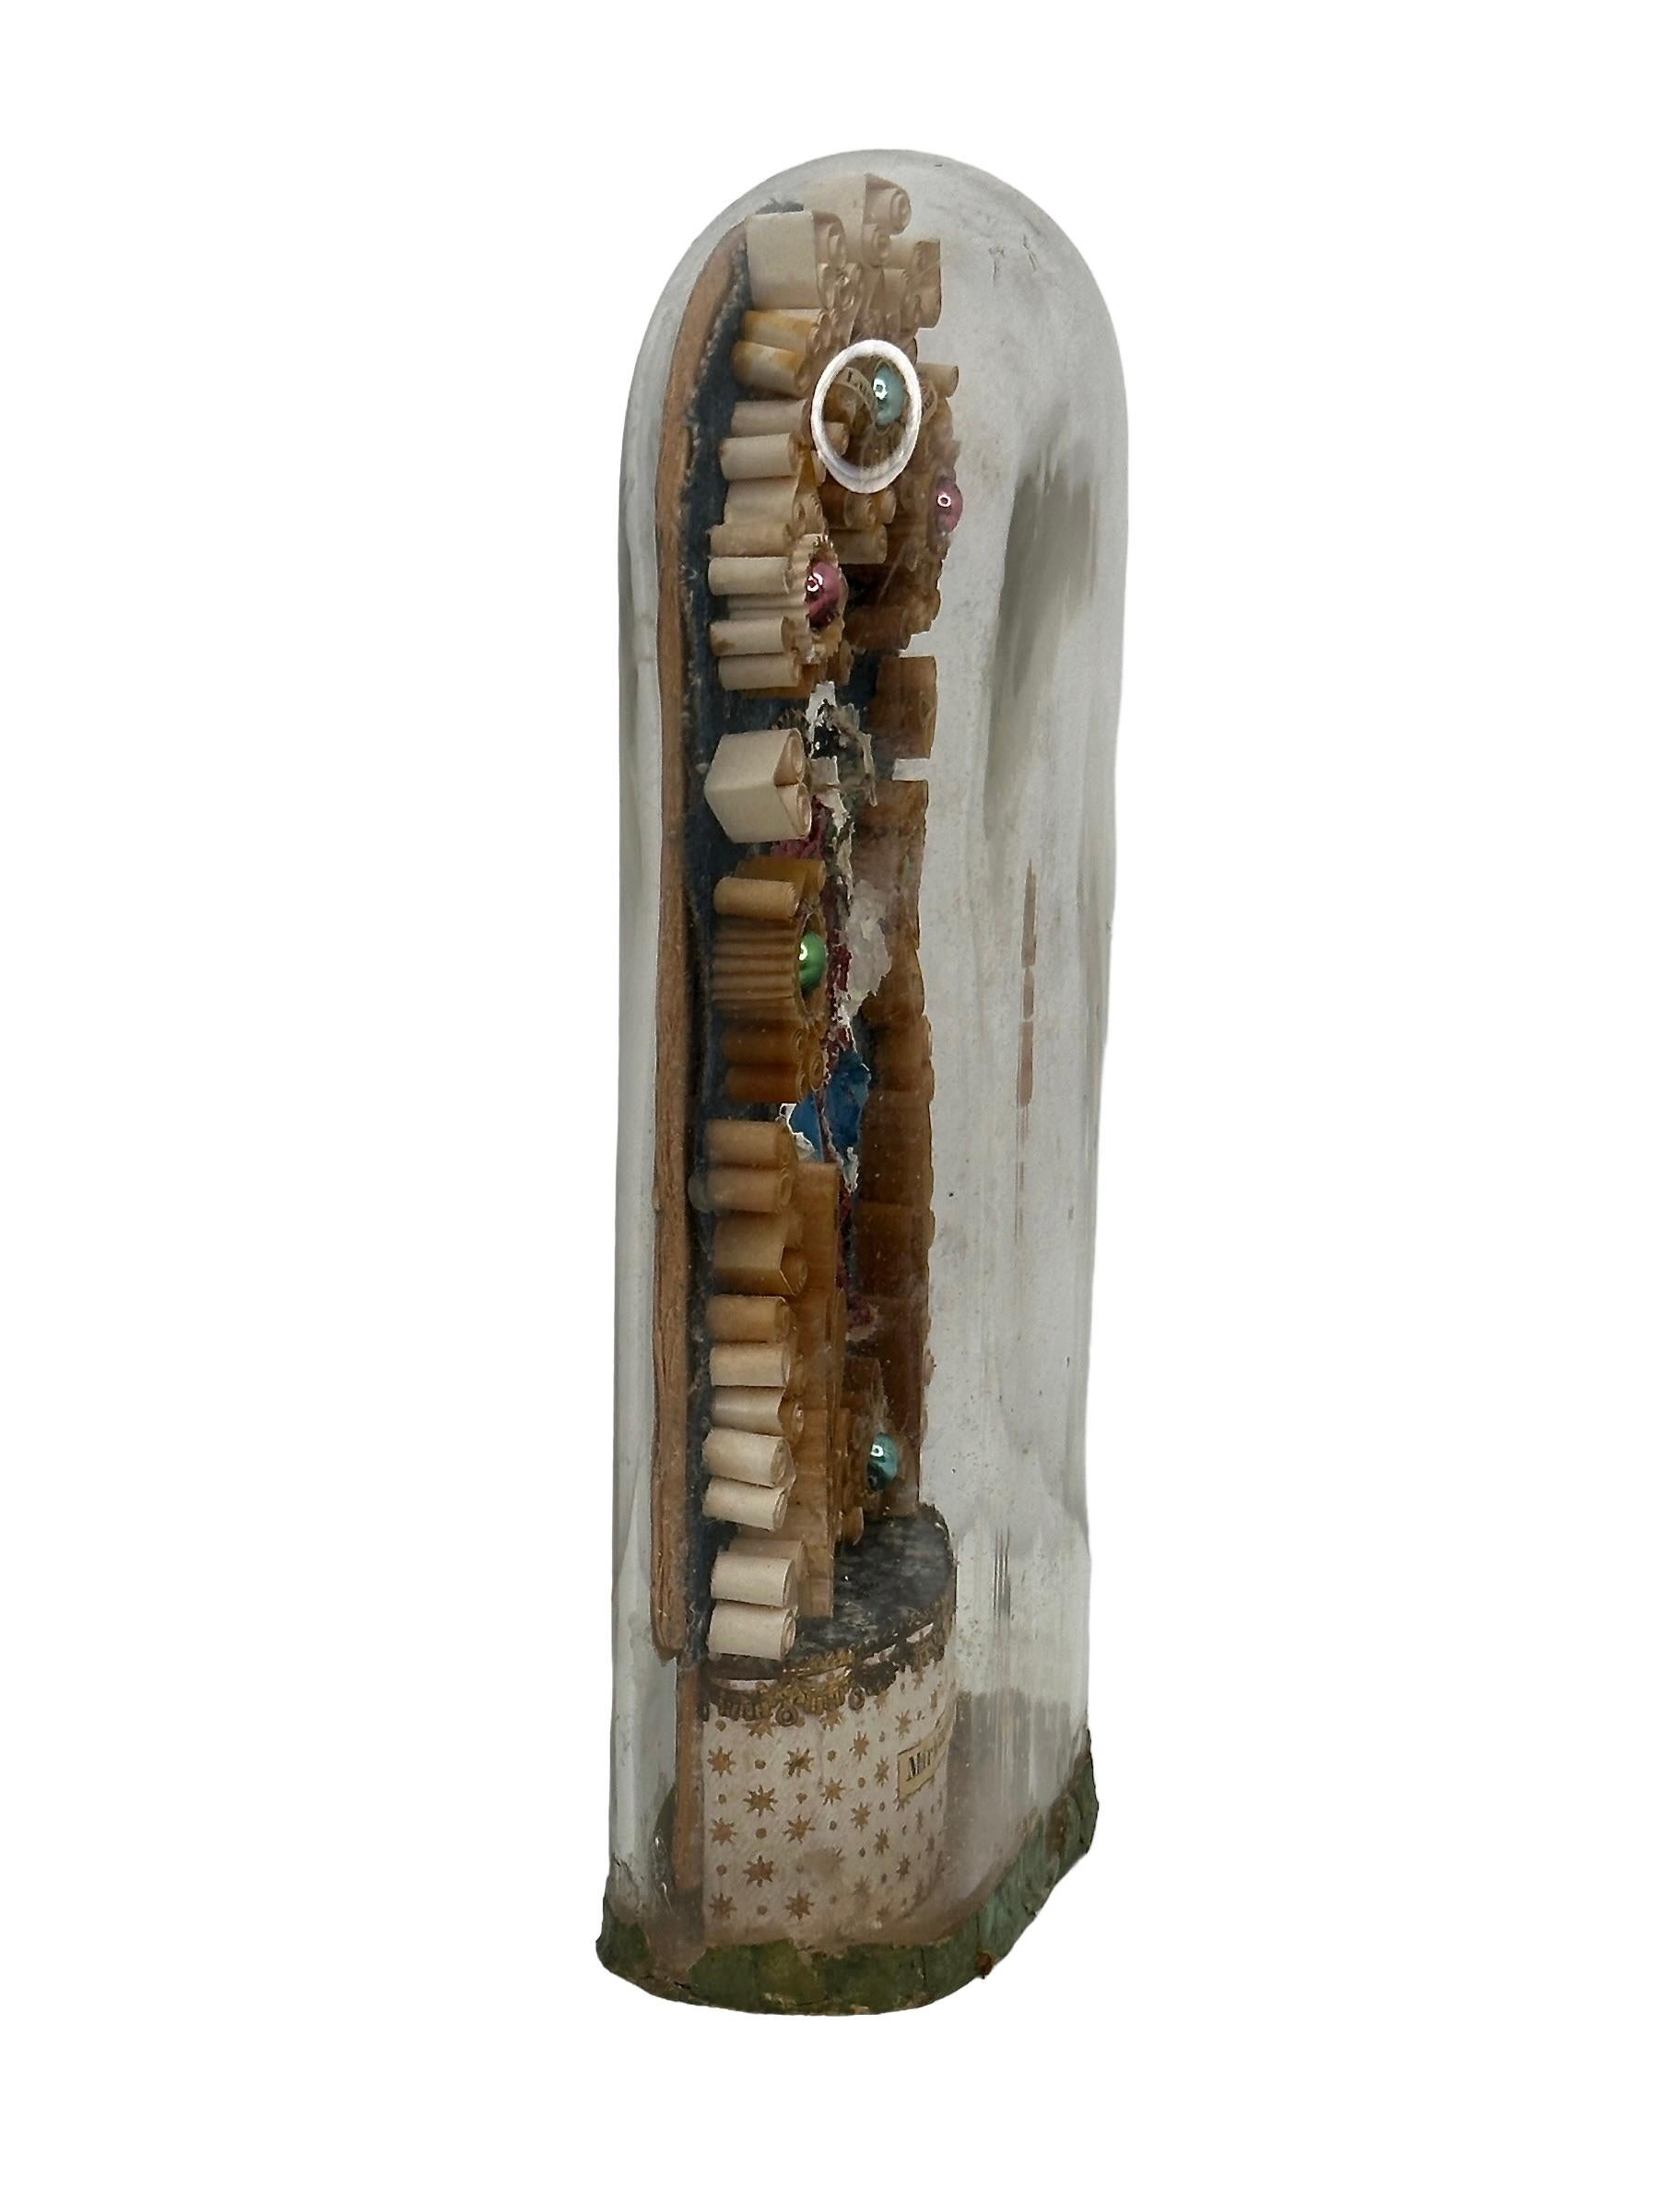 Eine antike Glaskuppel mit der Figur der Jungfrau Maria und einigen anderen Holz- und Glasteilen. Es hat auch eine berührende Reliquie des Agnus Dei. Gefunden bei einem Nachlassverkauf in Nürnberg, Deutschland. Wir glauben, dass es sich um eine